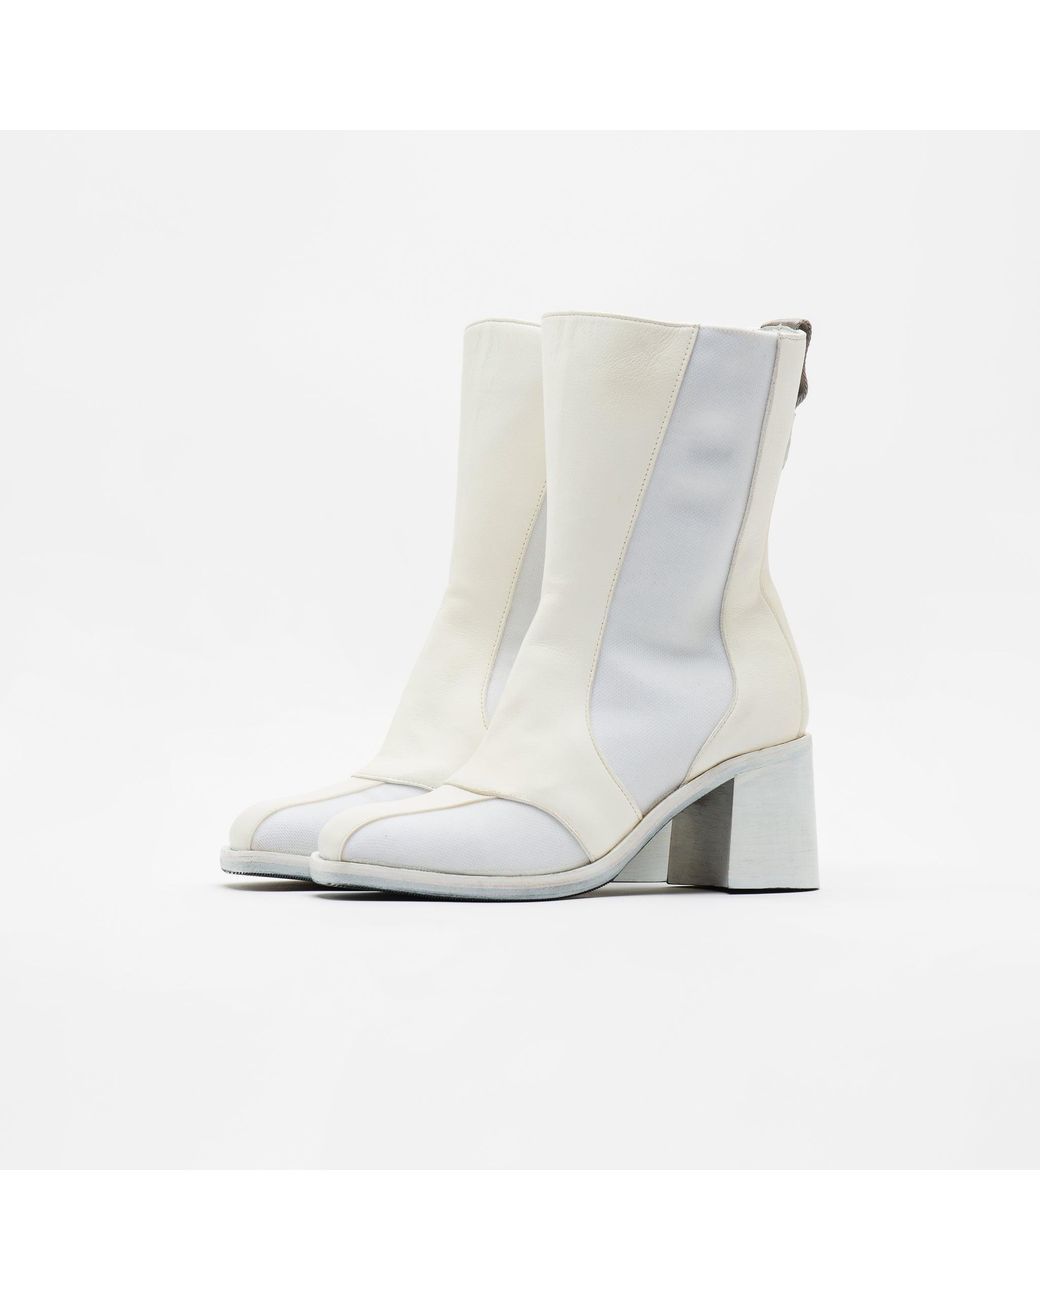 2022年ファッション福袋 Legacy Our 21AW 36 White Boots Shaft ブーツ